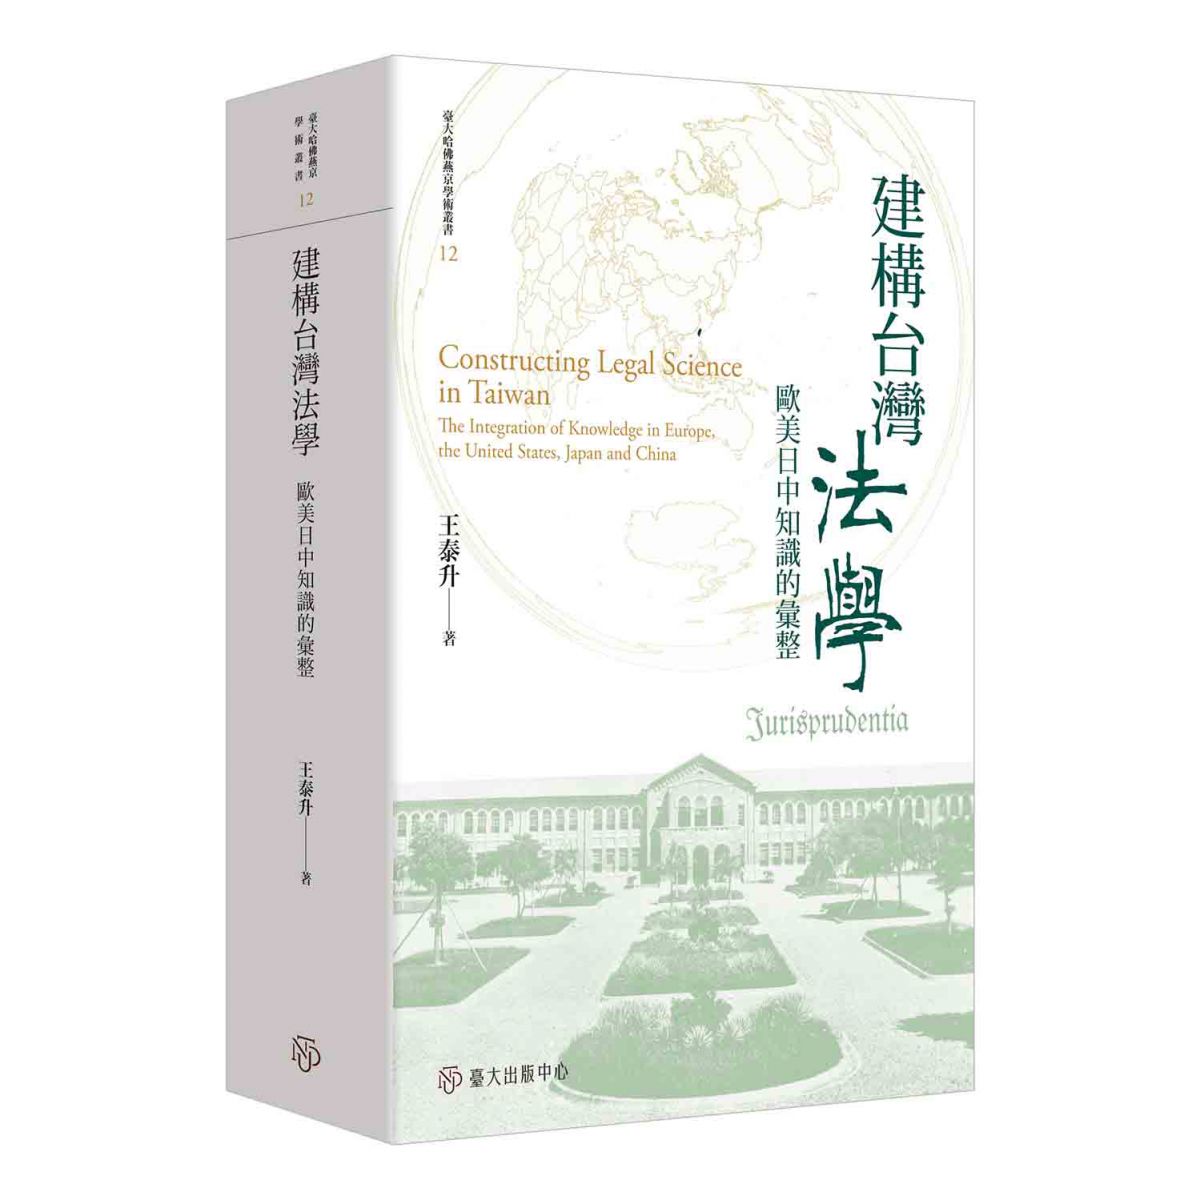 《建構台灣法學》本於歷史學、法律學、社會學的關懷，敘述台灣如何建構出當下的法學內涵